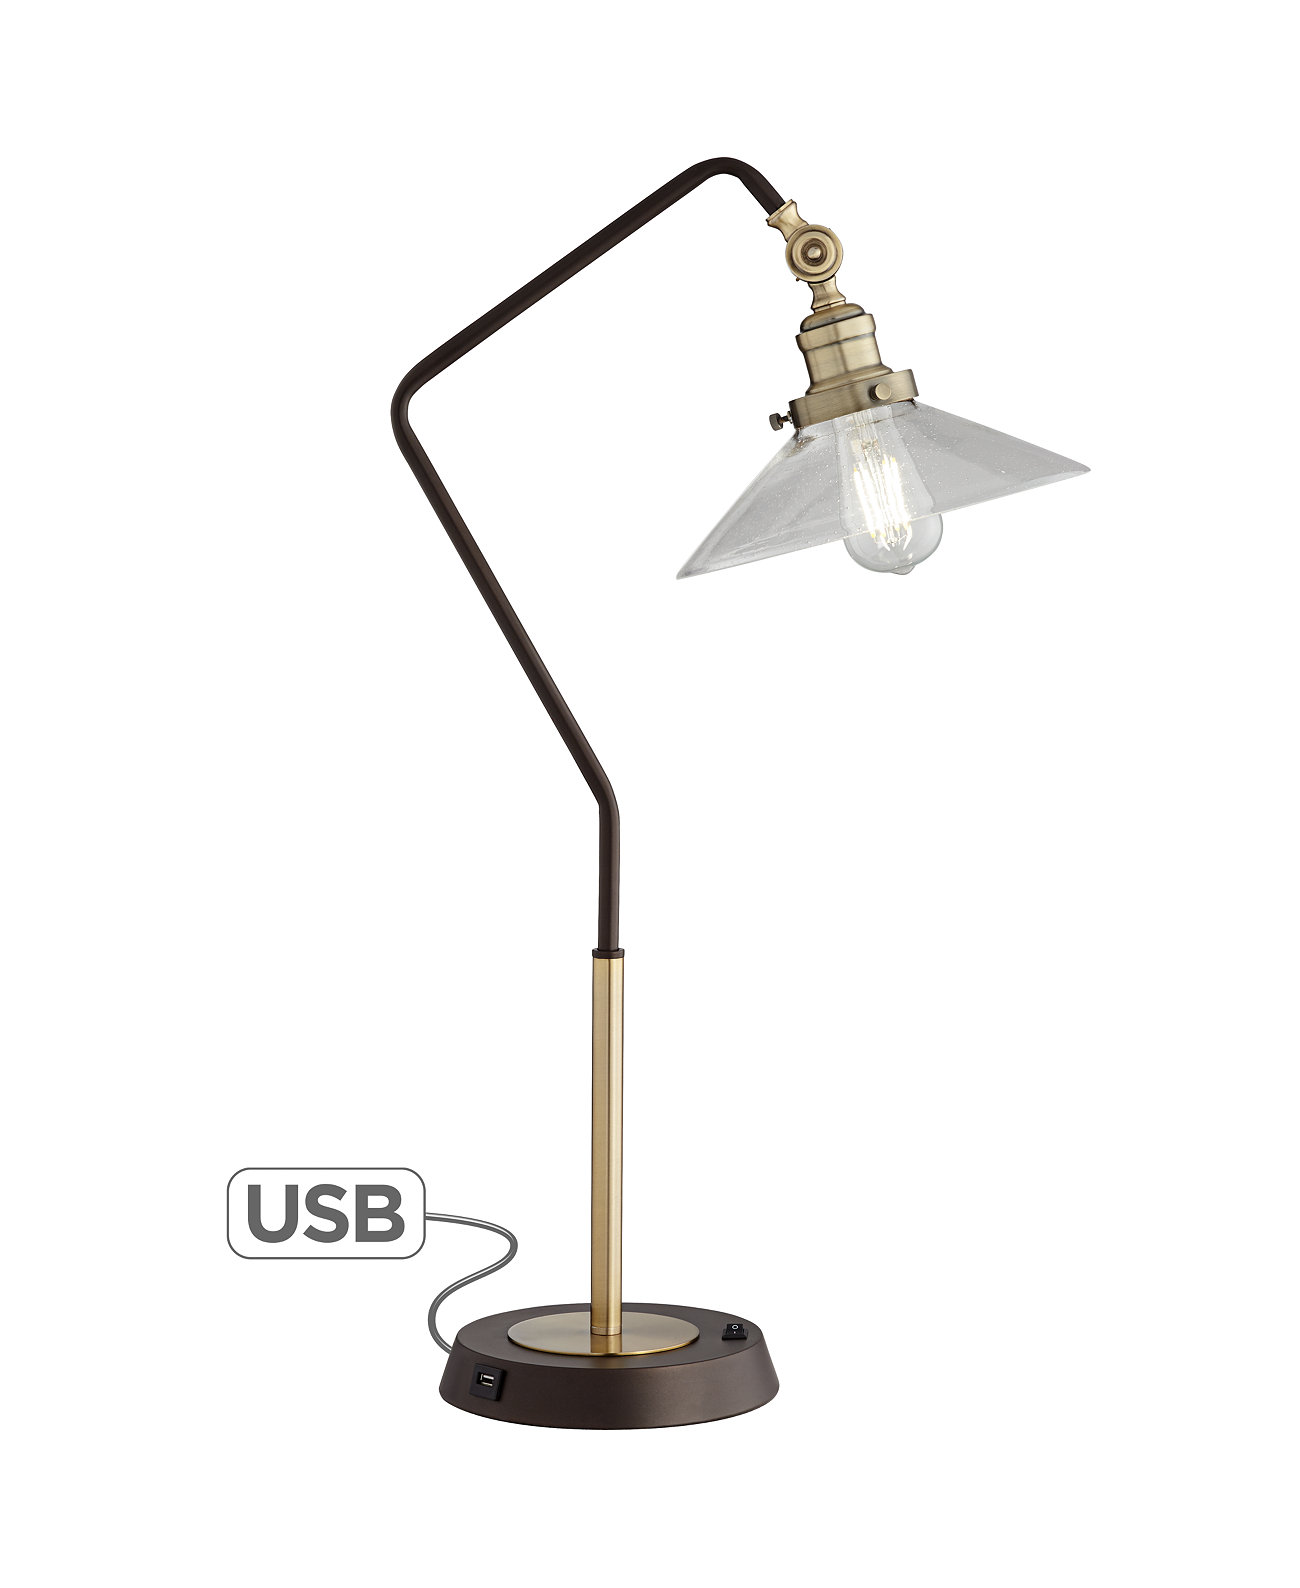 Промышленная настольная лампа из бронзы и латуни Kathy Ireland